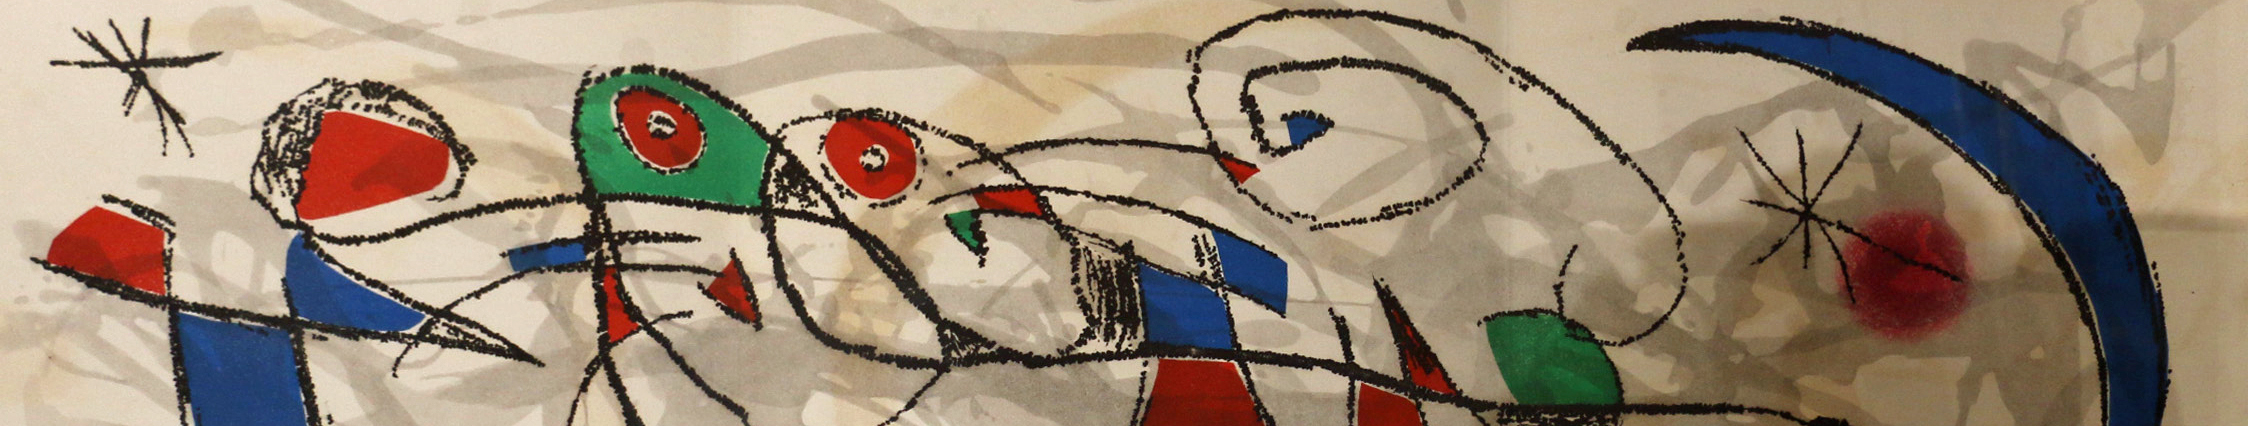 Joan Miró -  L'émancipation définitive de la queue du chat